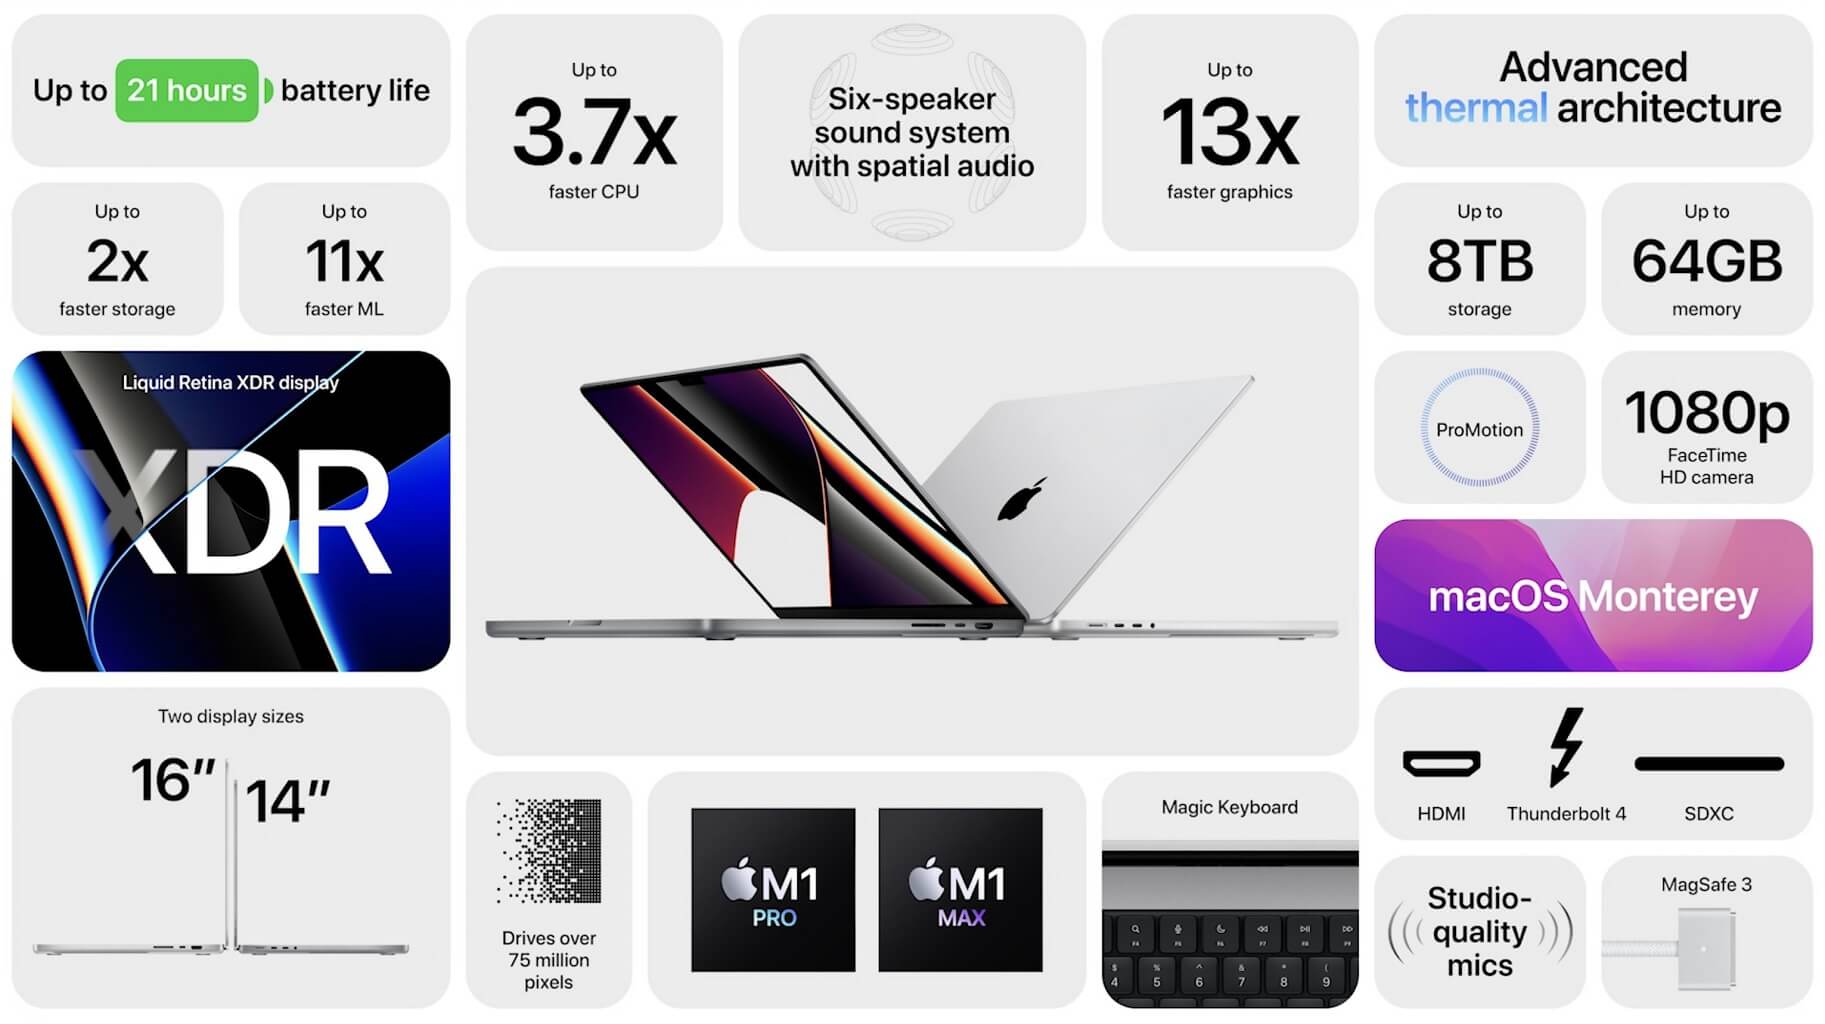 Apple MacBook Pro features